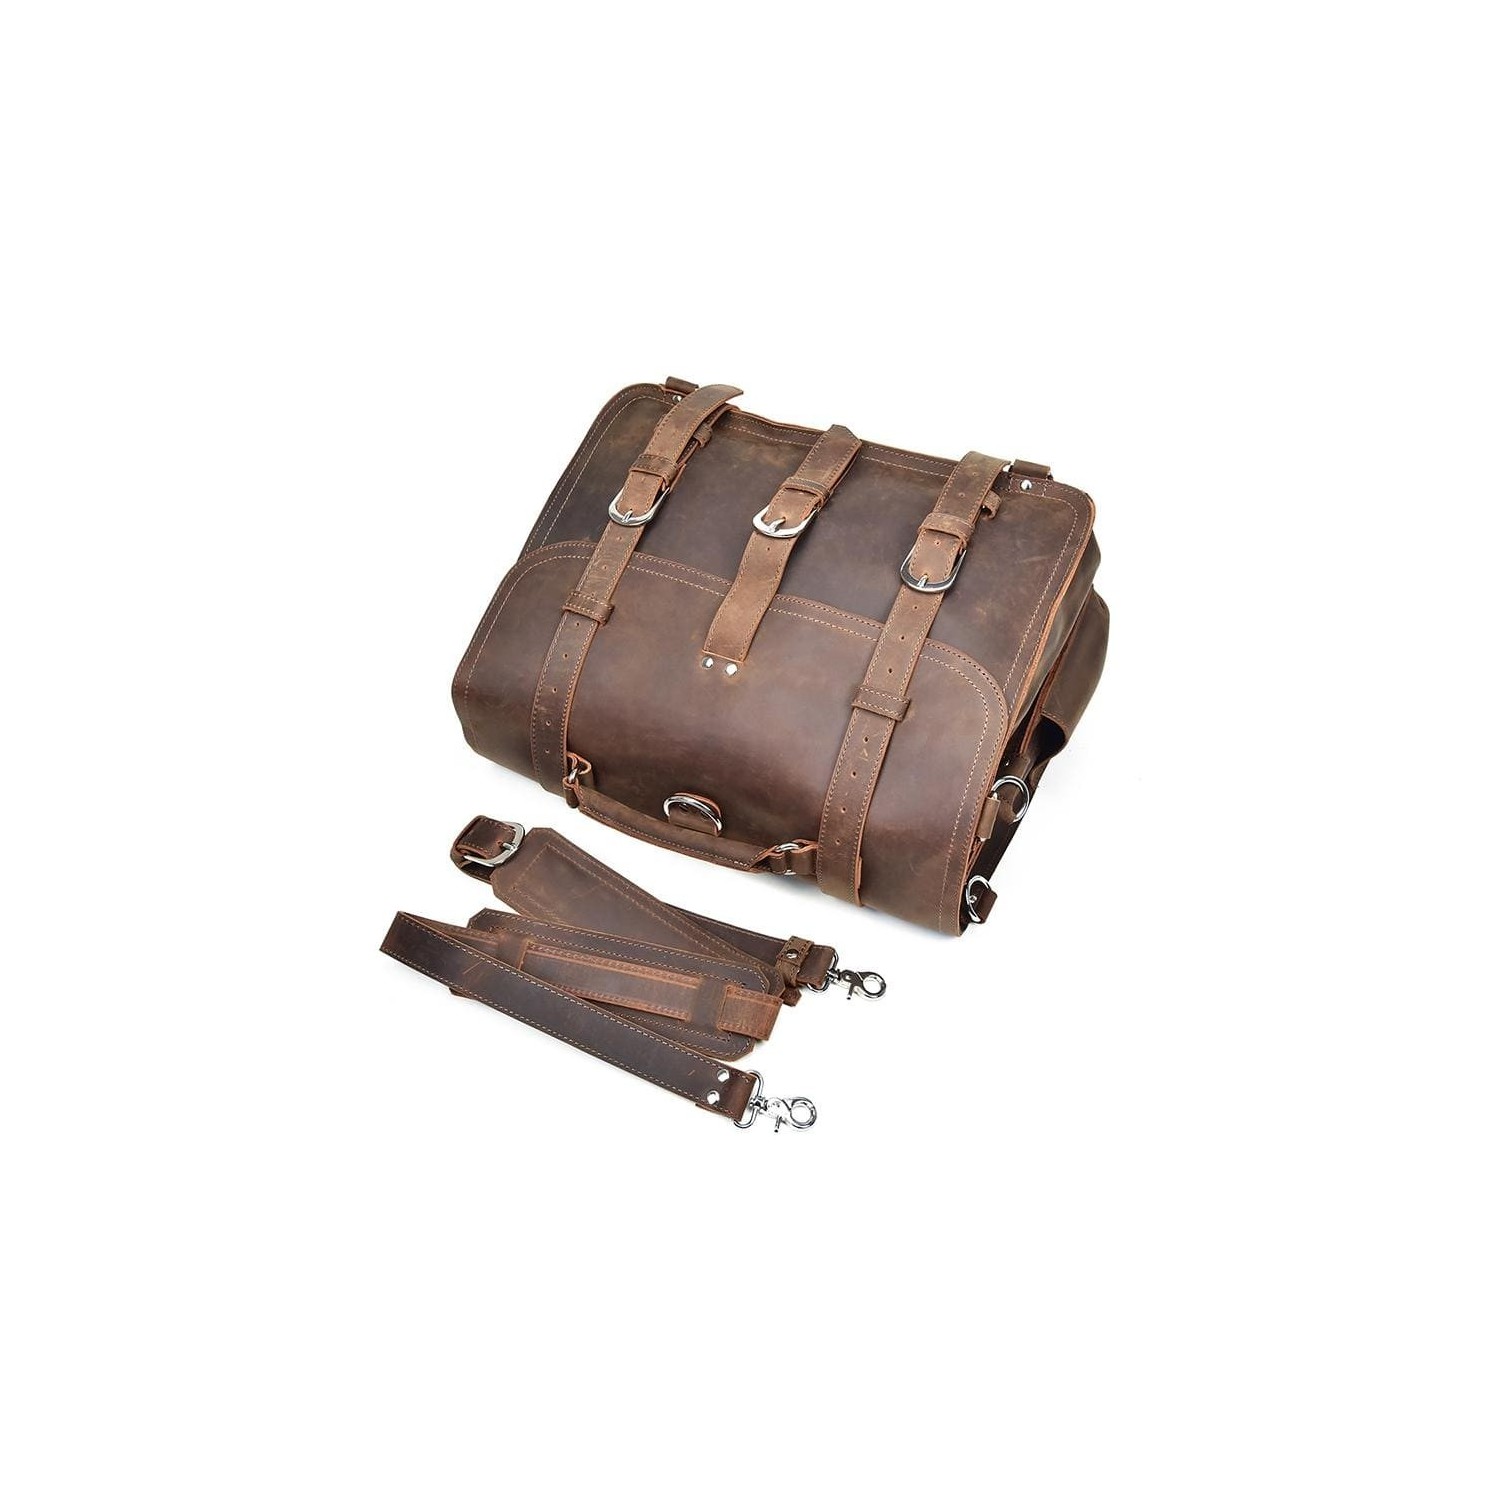 The Gustav Messenger Bag  Large Capacity Vintage Leather Messenger Ba